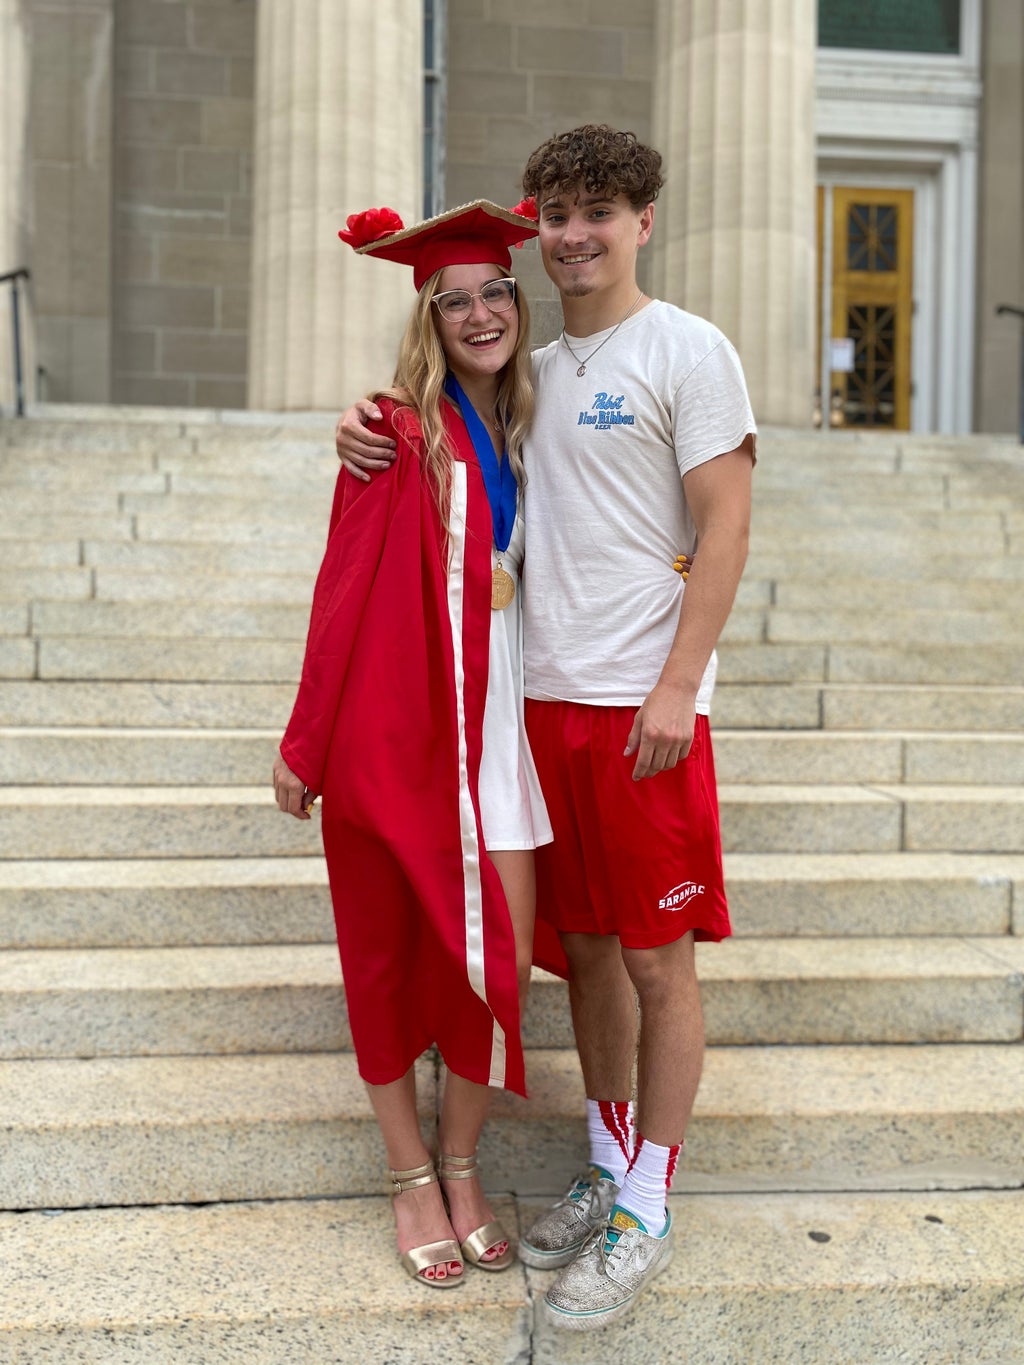 My boyfriend and I during my high school graduation